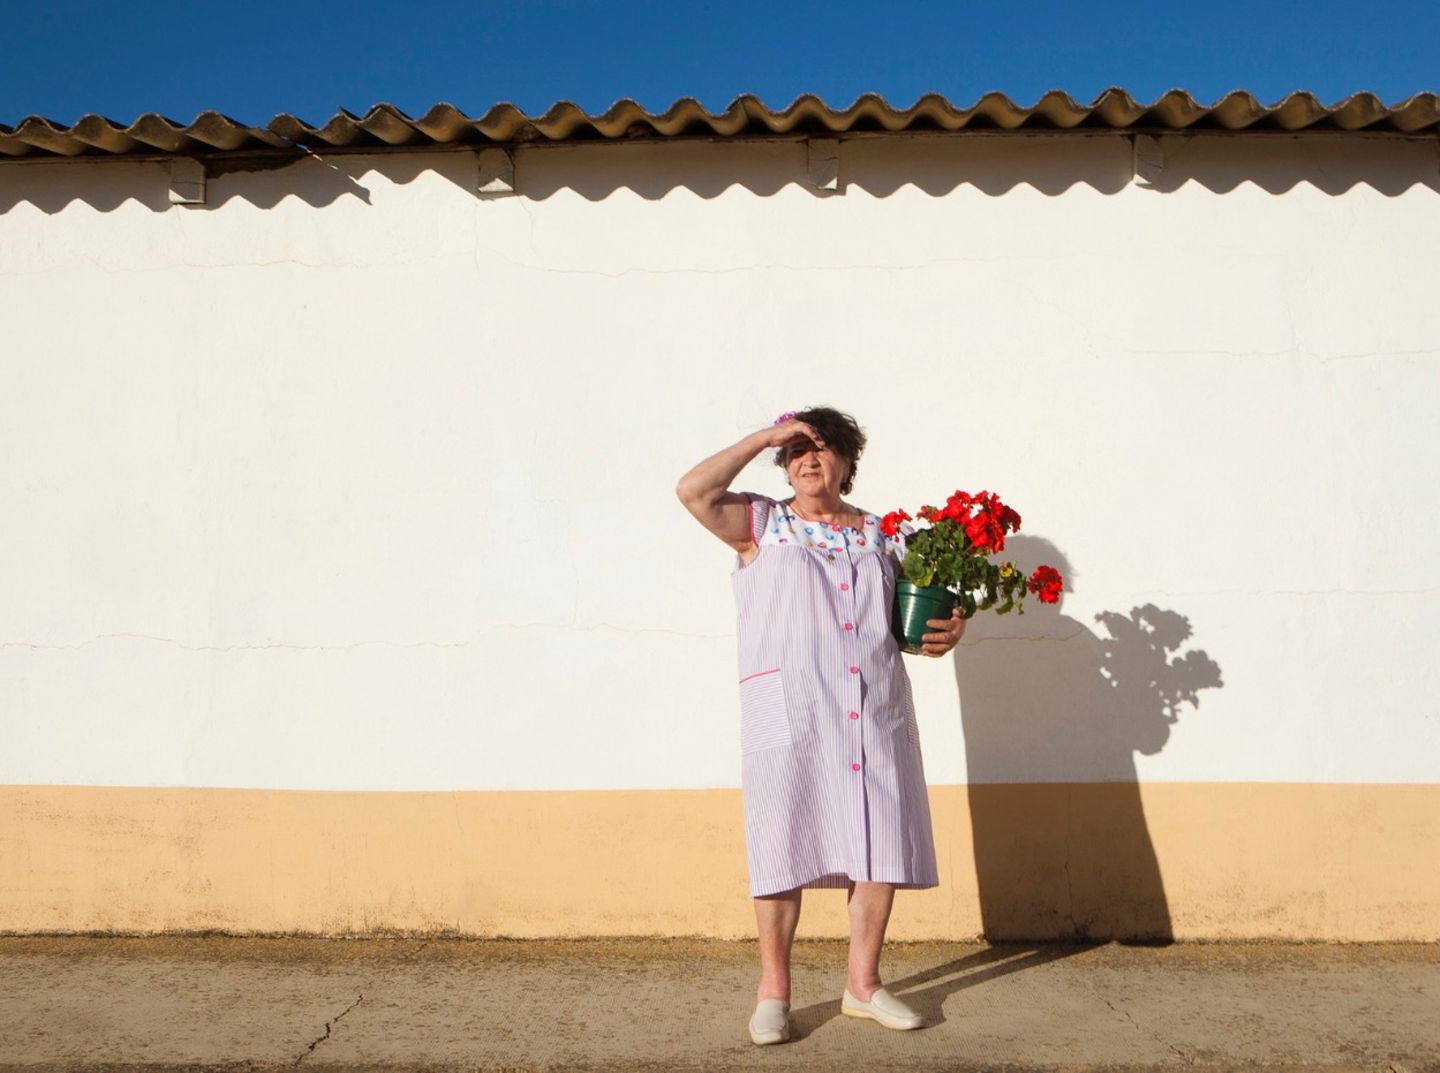 "La Bata": Dieses Fotoprojekt würdigt Frauen, die es bald nicht mehr geben wird